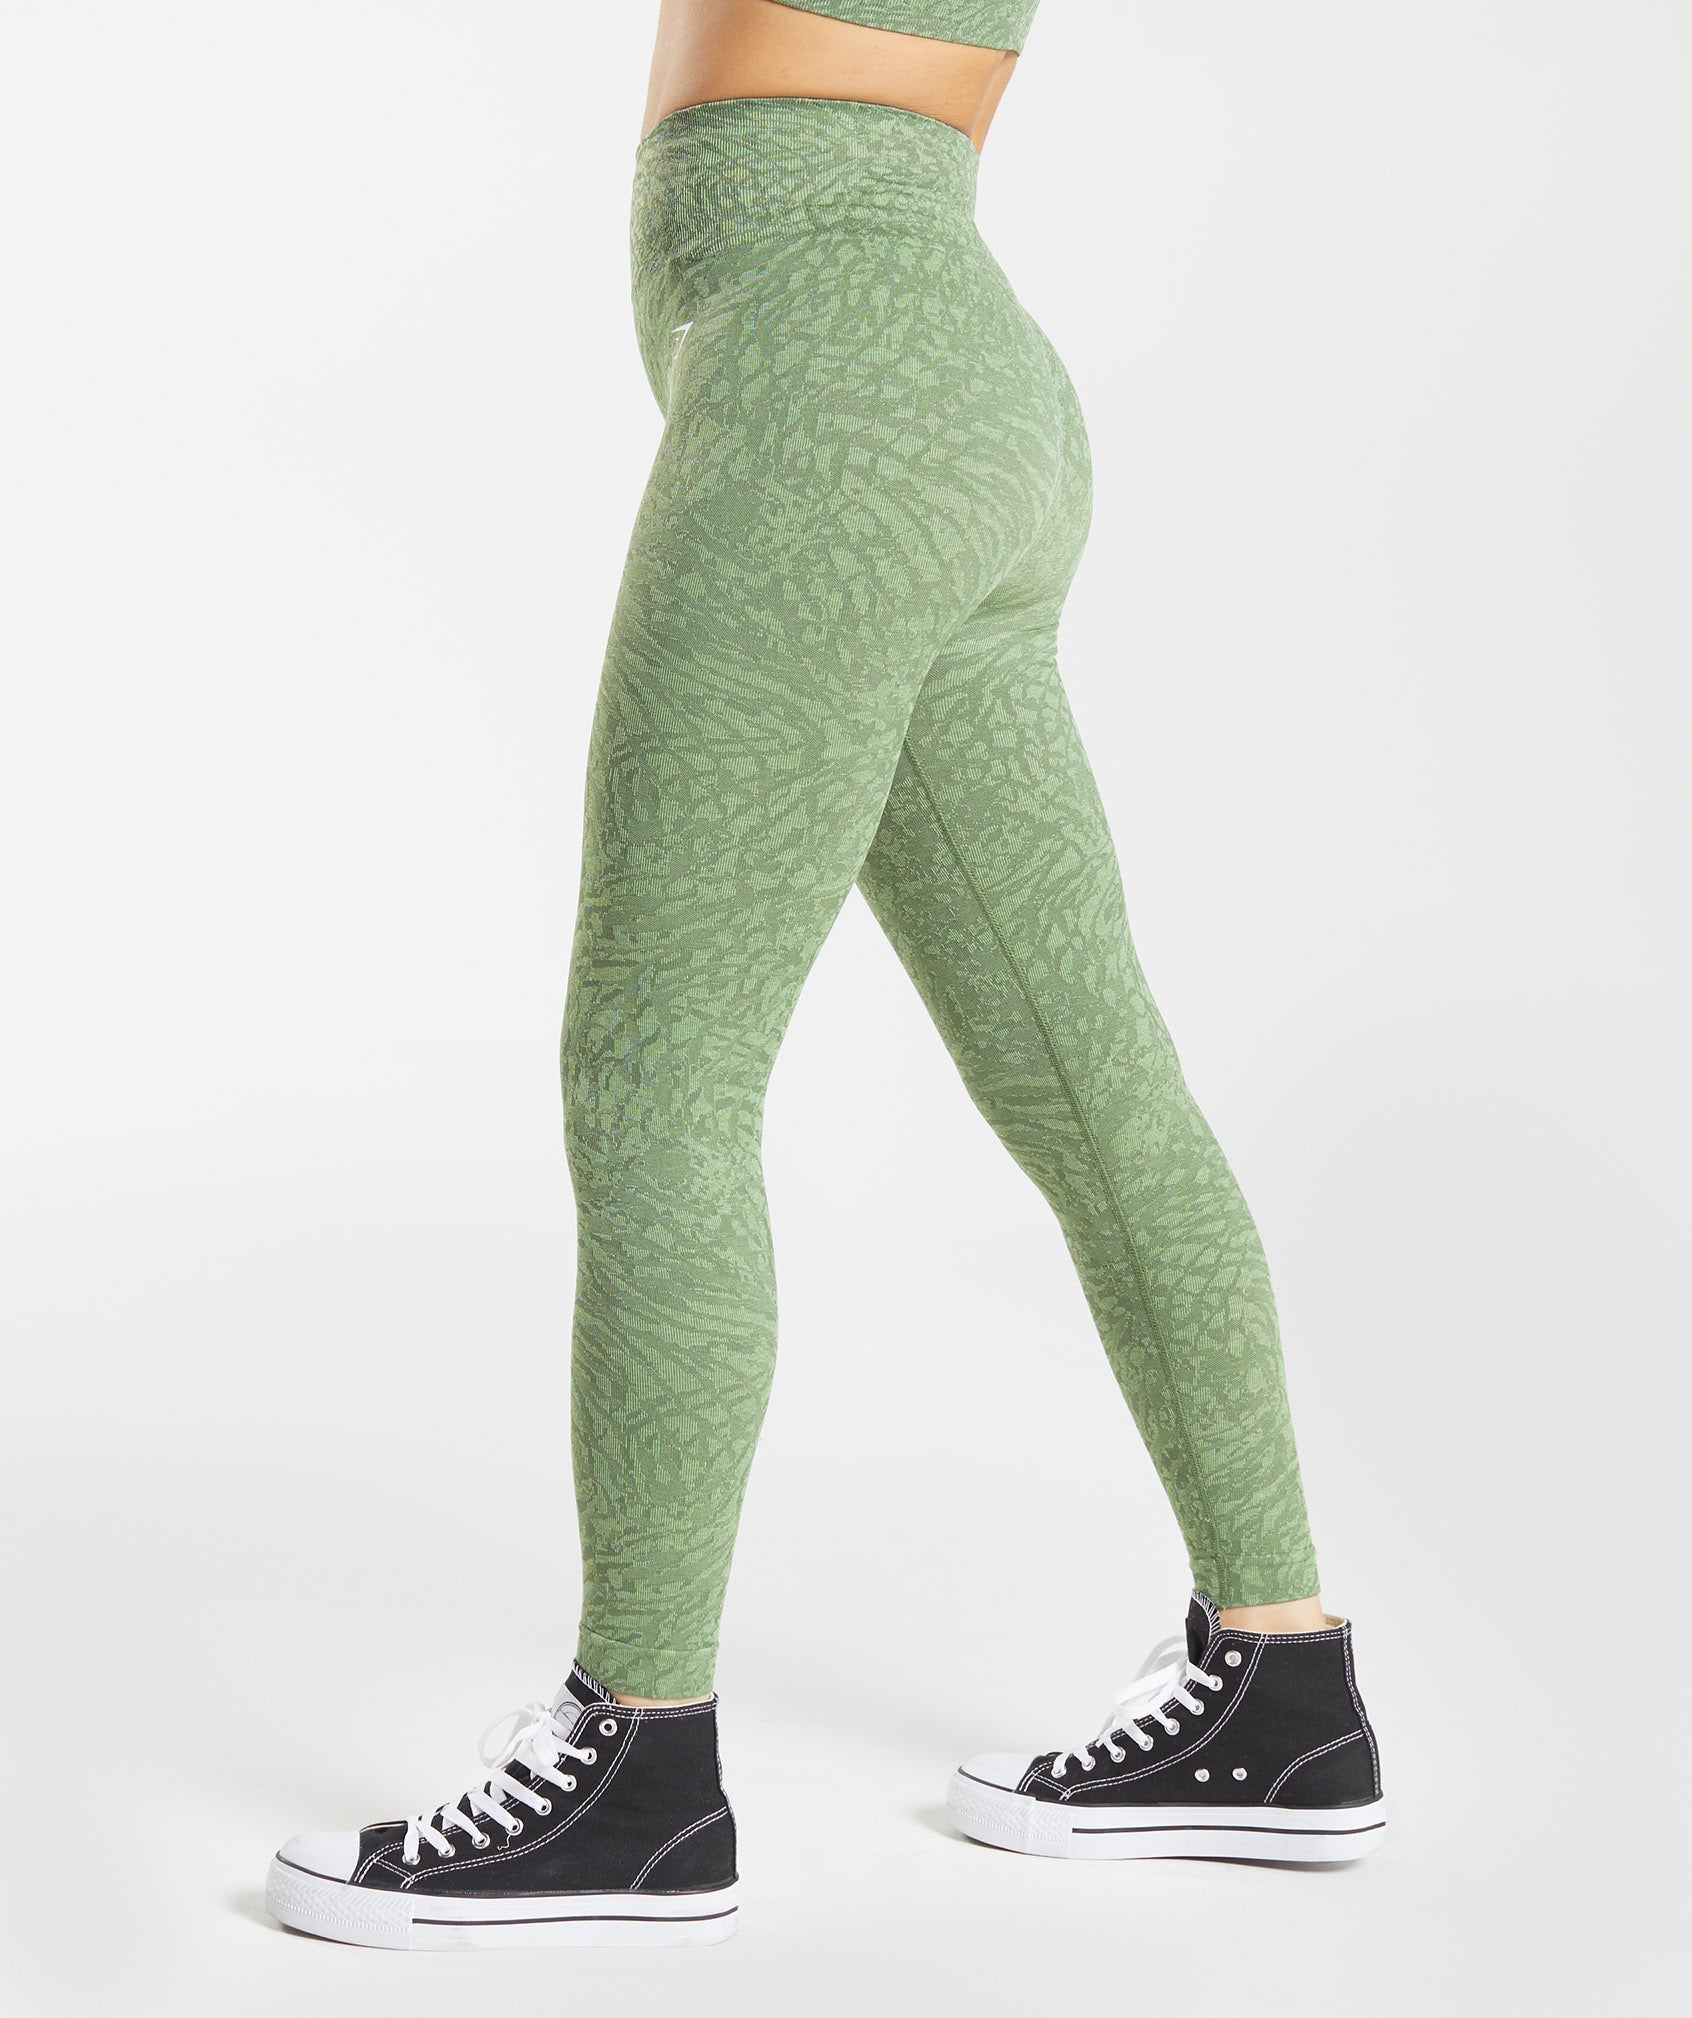 Gymshark - Adapt Animal Seamless Leggings on Designer Wardrobe